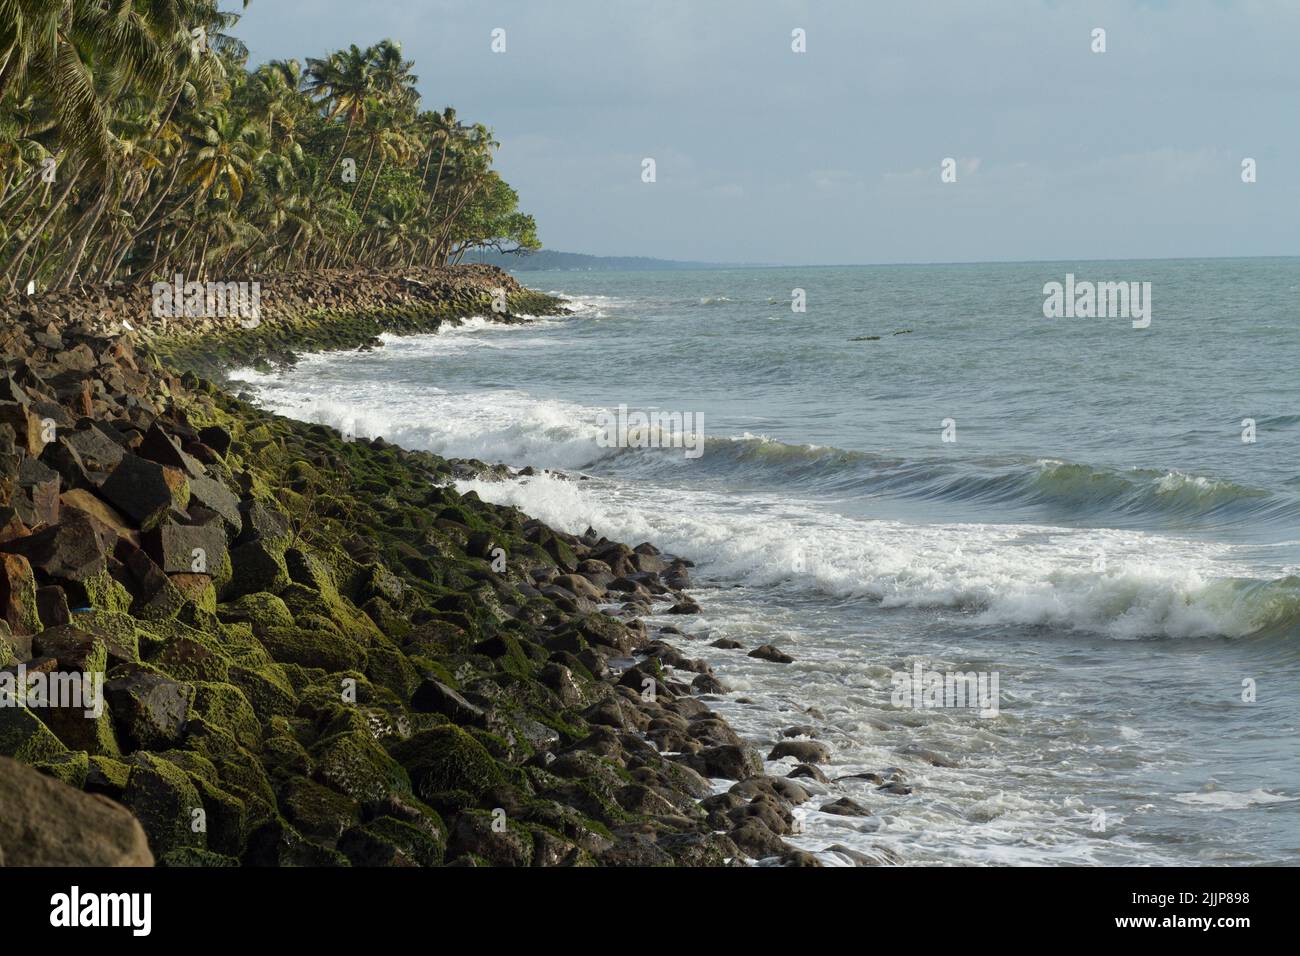 A rocky shore at the Thirumullavaram Beach, Kerala, India Stock Photo